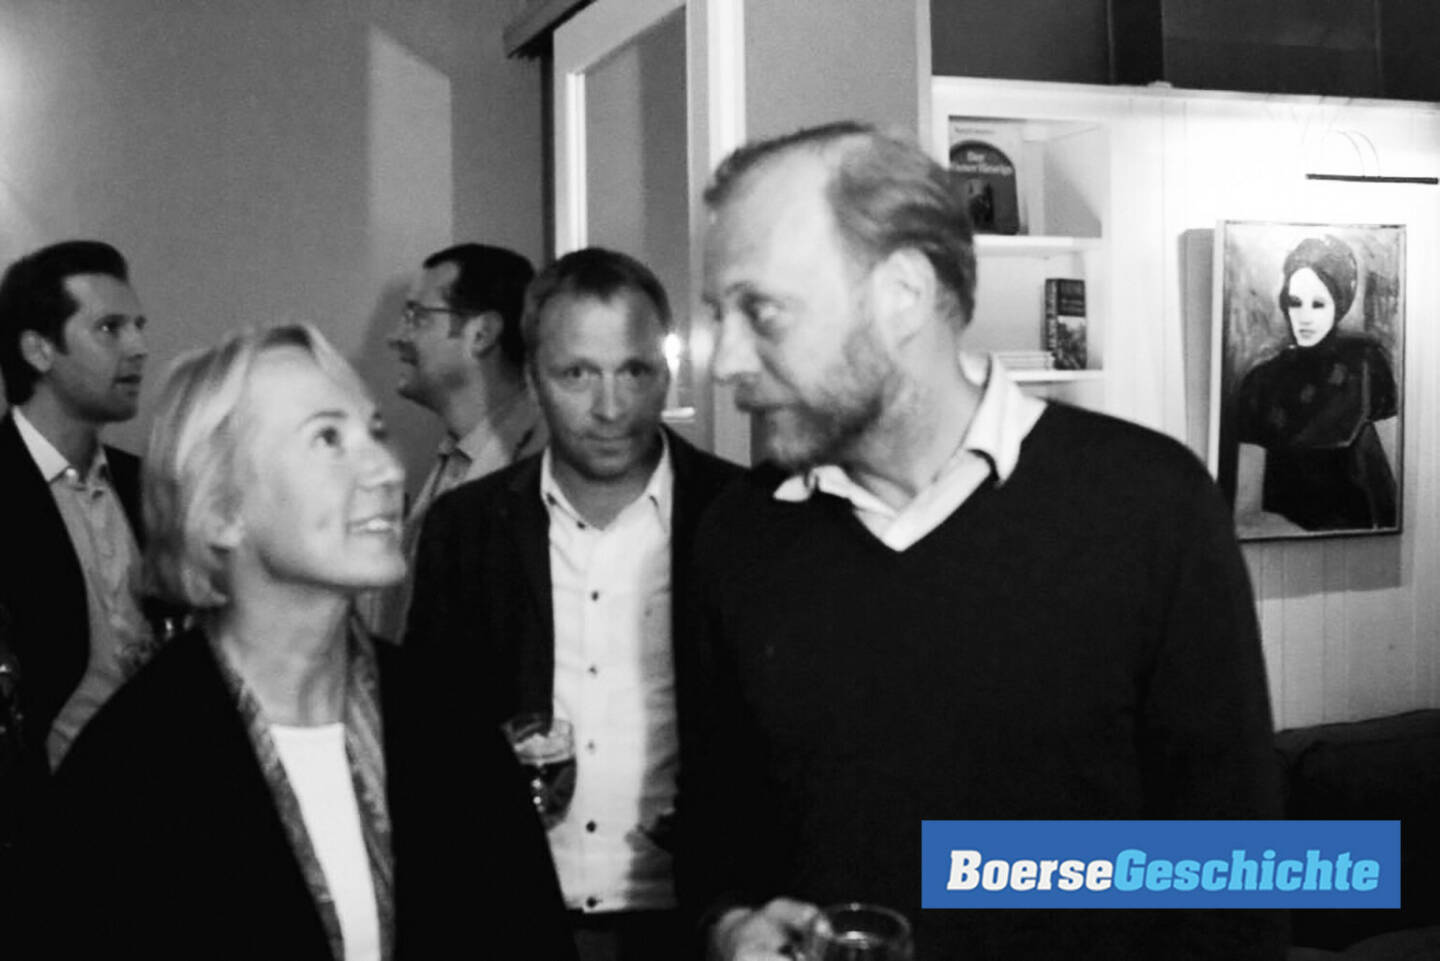 #boersegeschichte: Aktuelle, spätere und frühere ZFA-Vorstandsvorsitzende 2011 auf einem Bild: Heike Arbter, Frank Weingarts, Heinz Karasek